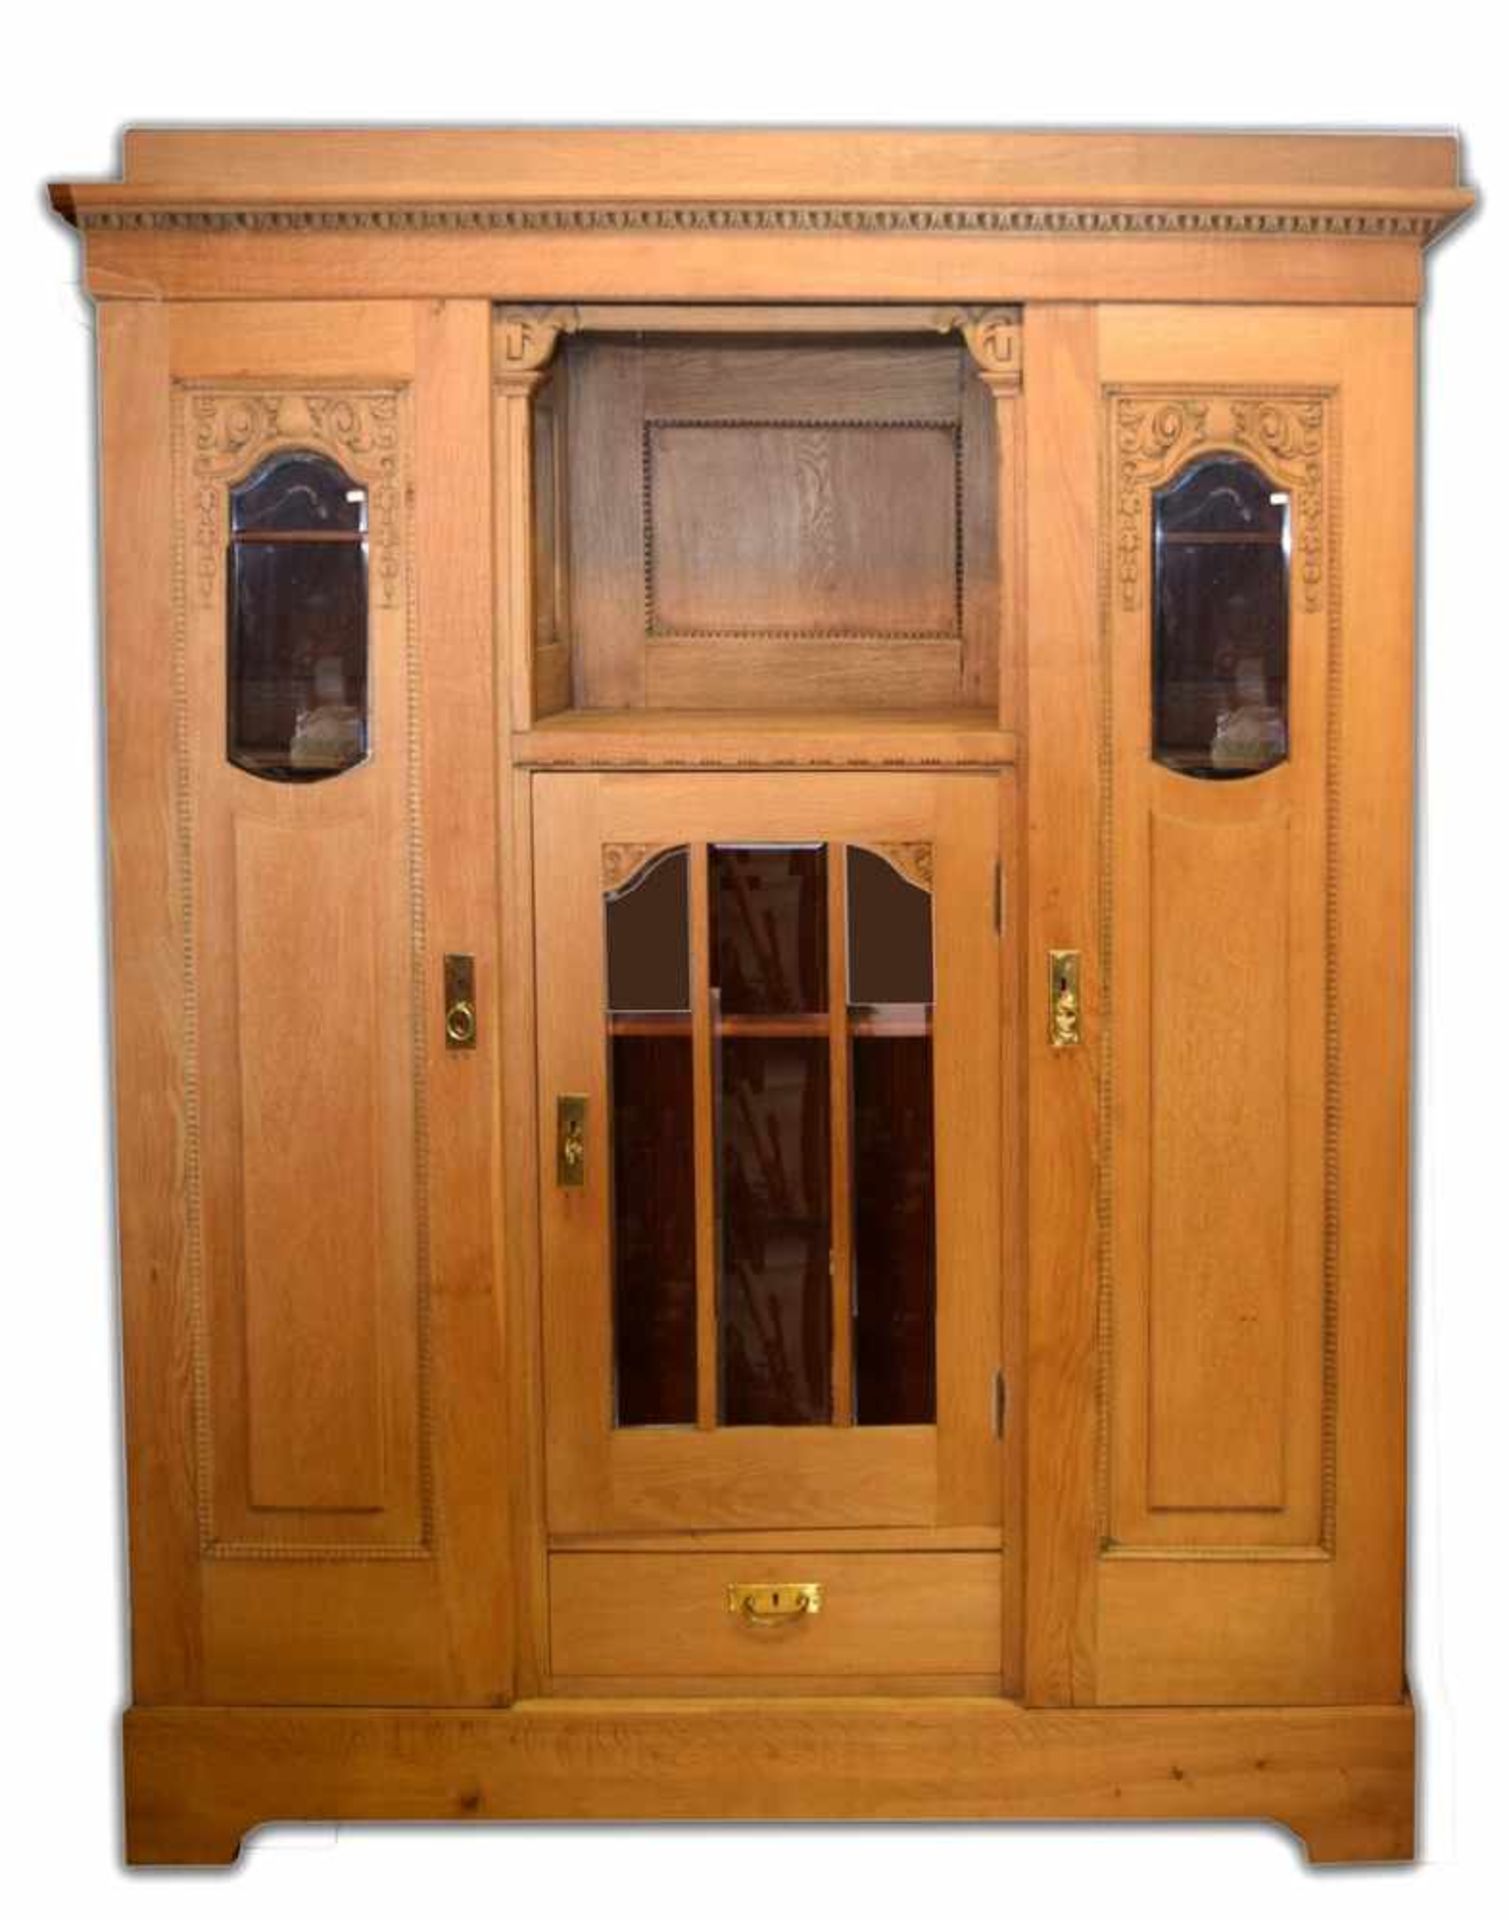 Jugendstil-VitrinenschrankEiche, kantiger Sockel, drei Türen, mittlere Tür verglast, untergeordnet